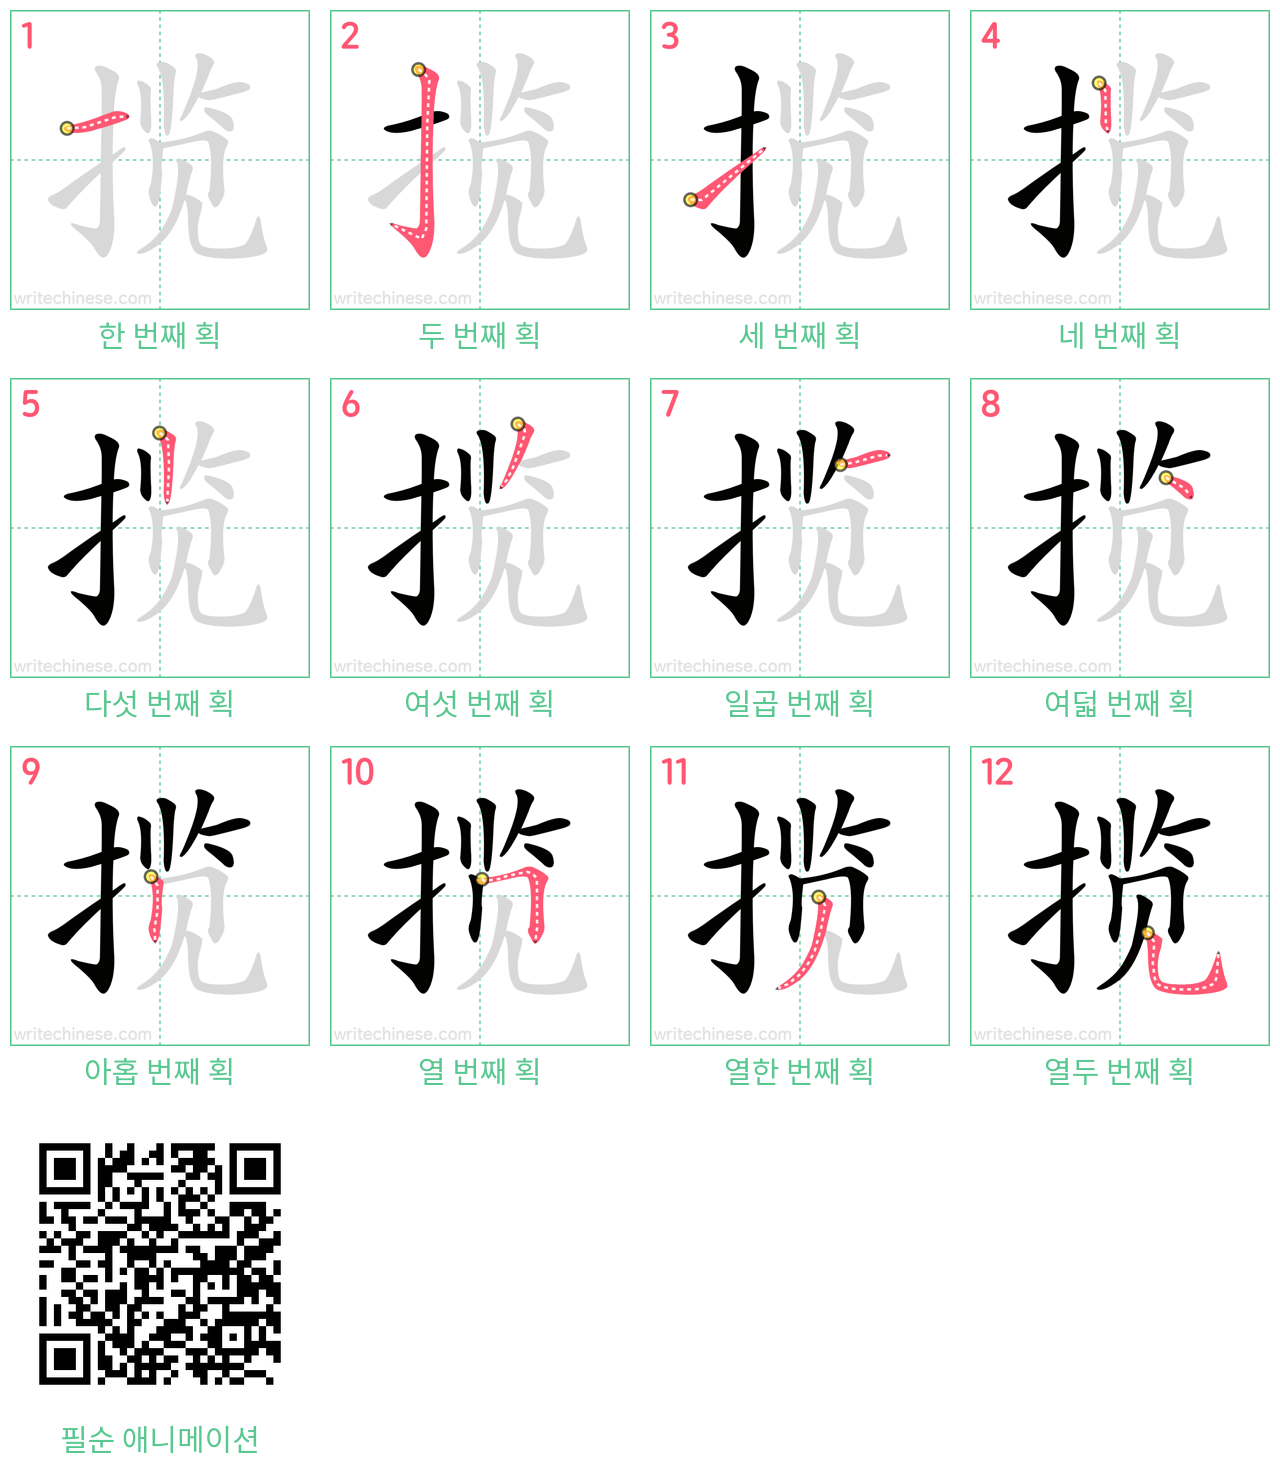 揽 step-by-step stroke order diagrams